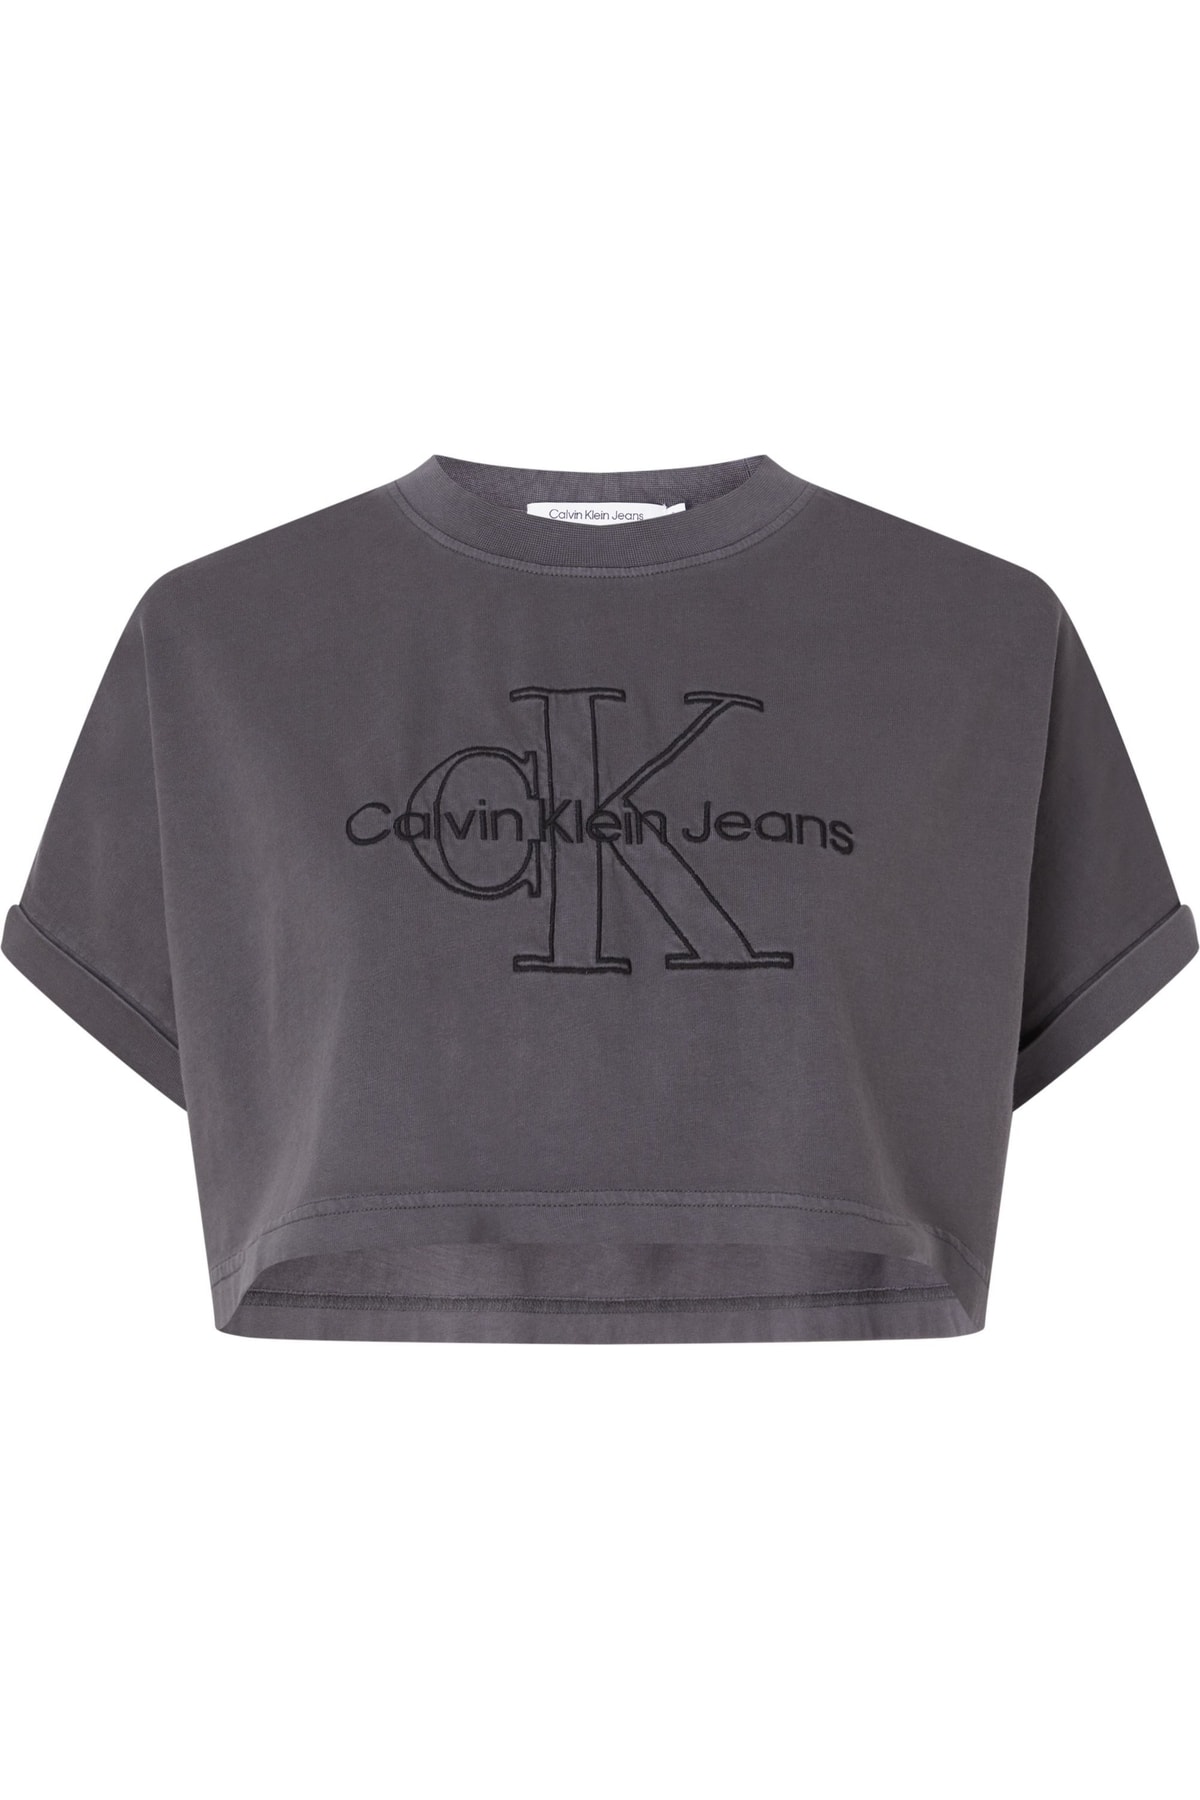 Calvin Klein T-Shirt Grau Regular Fit Fast ausverkauft